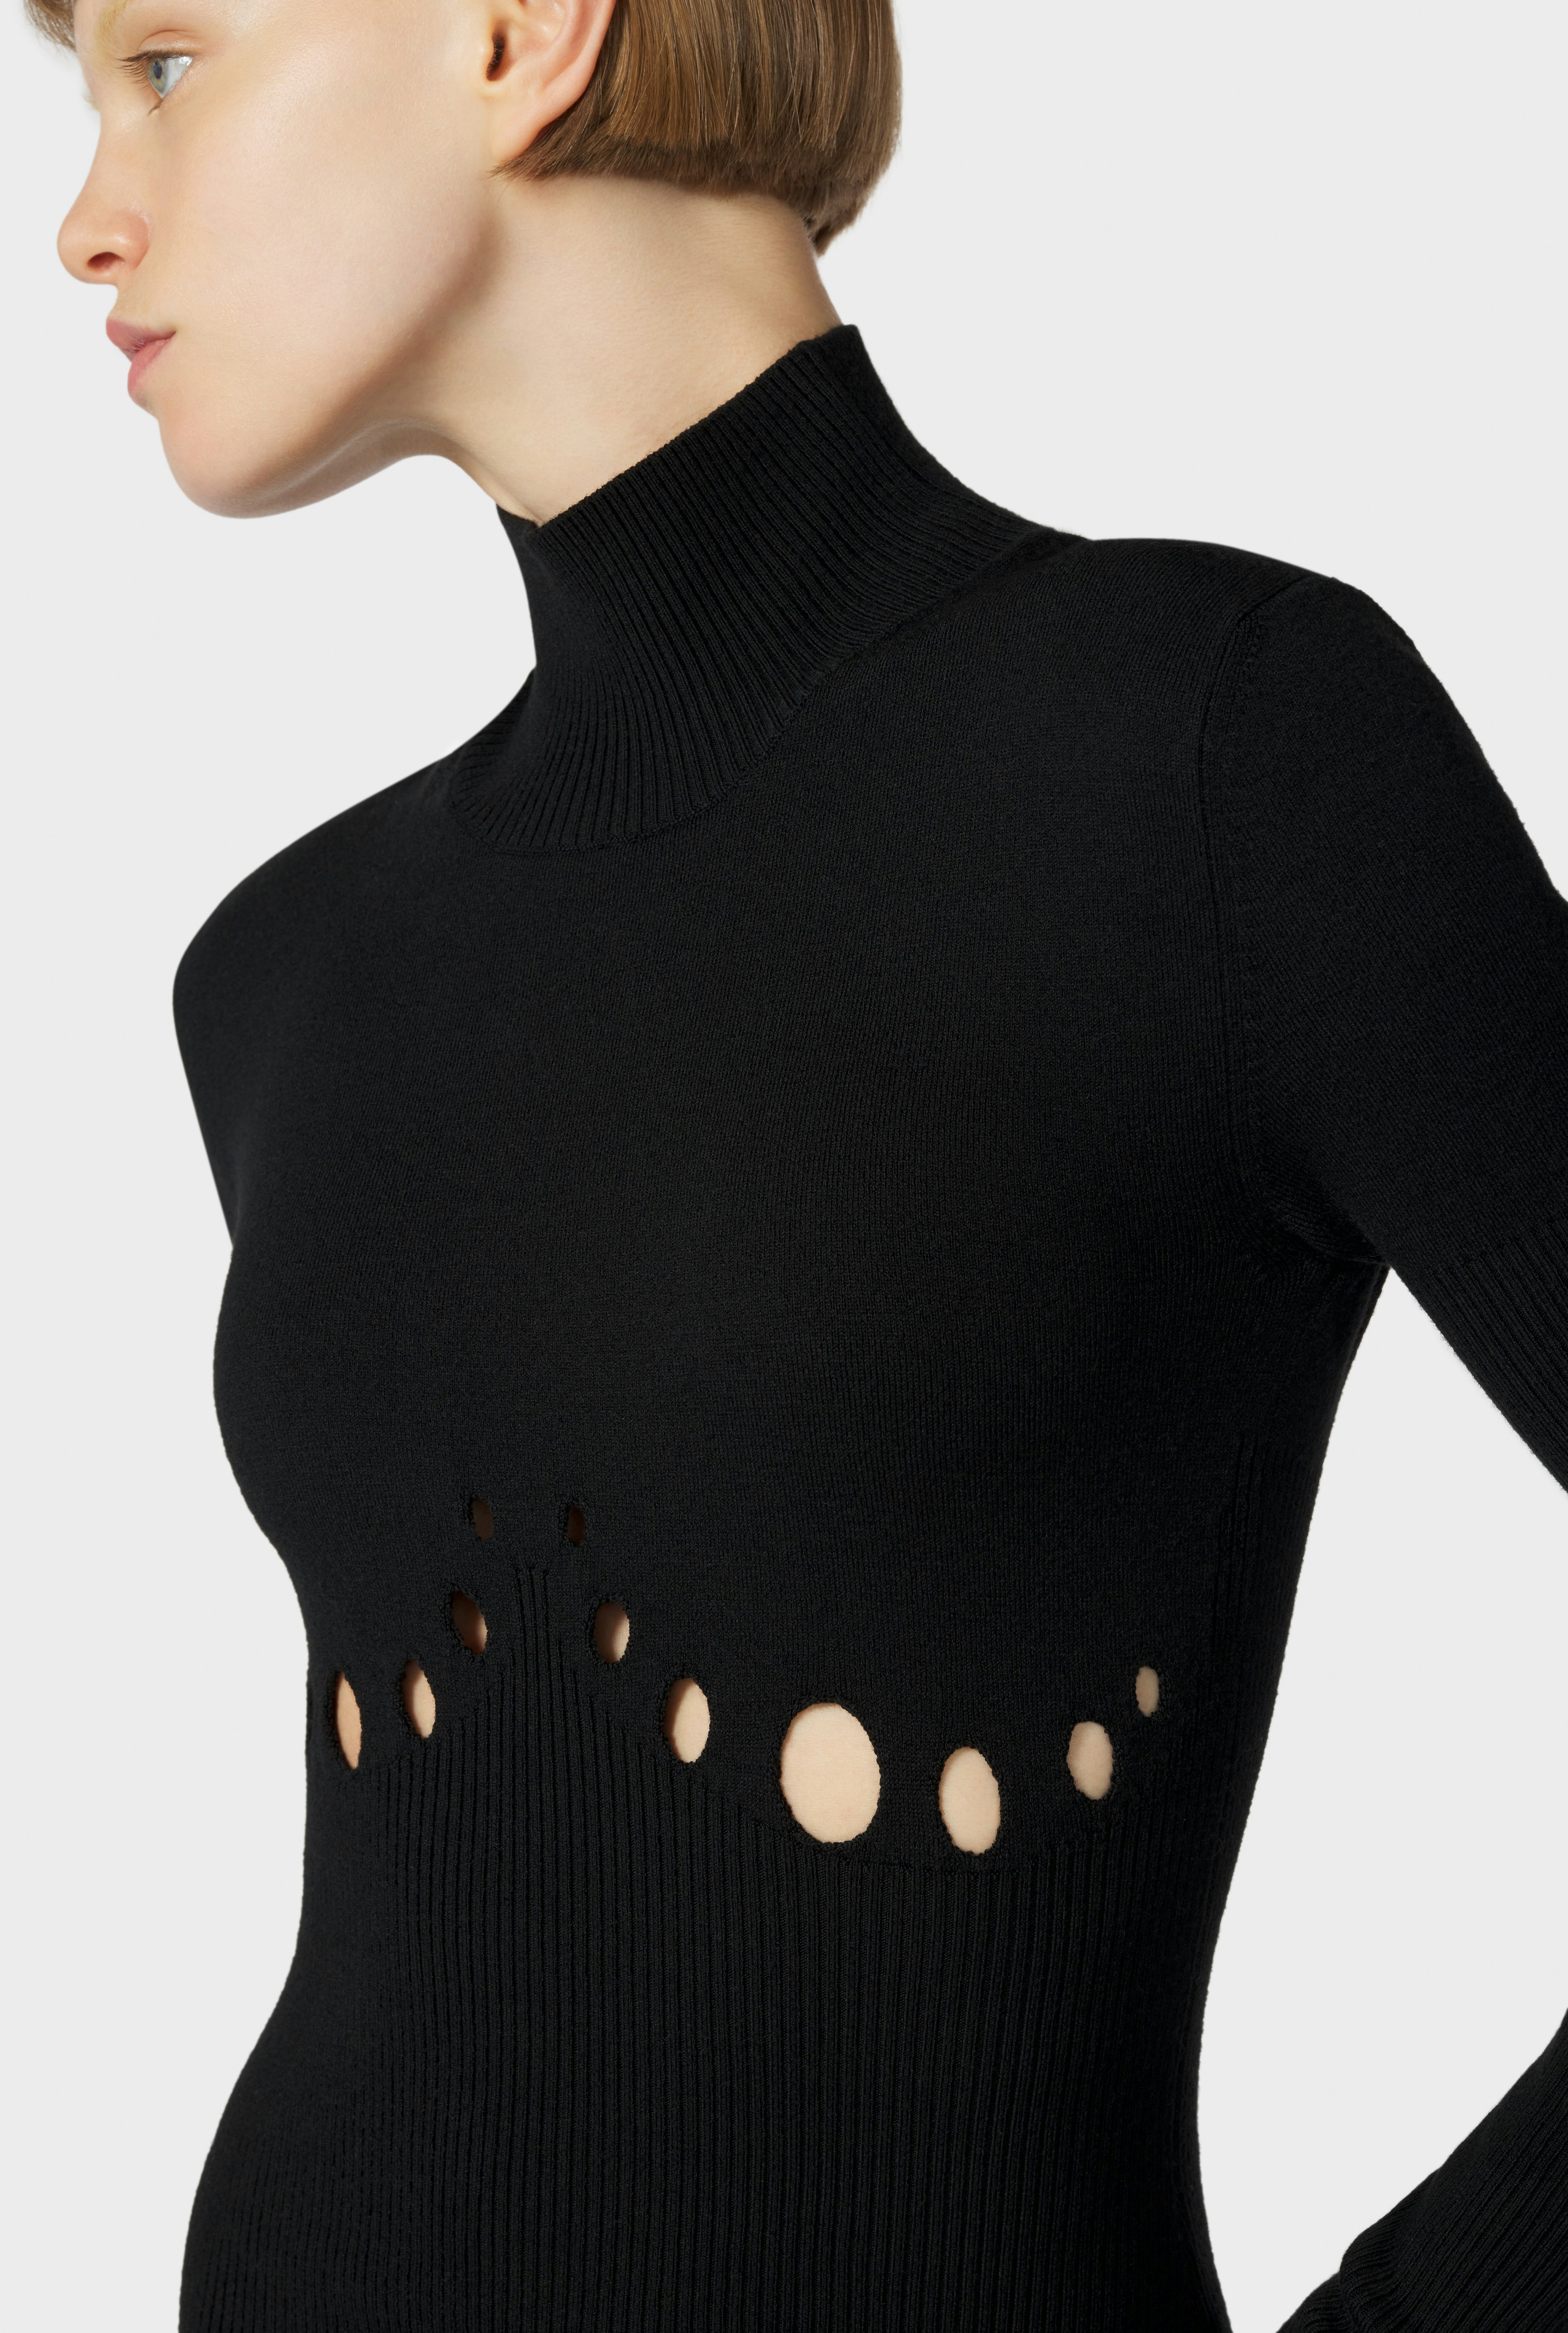 The Black Openworked Knit Dress Jean Paul Gaultier